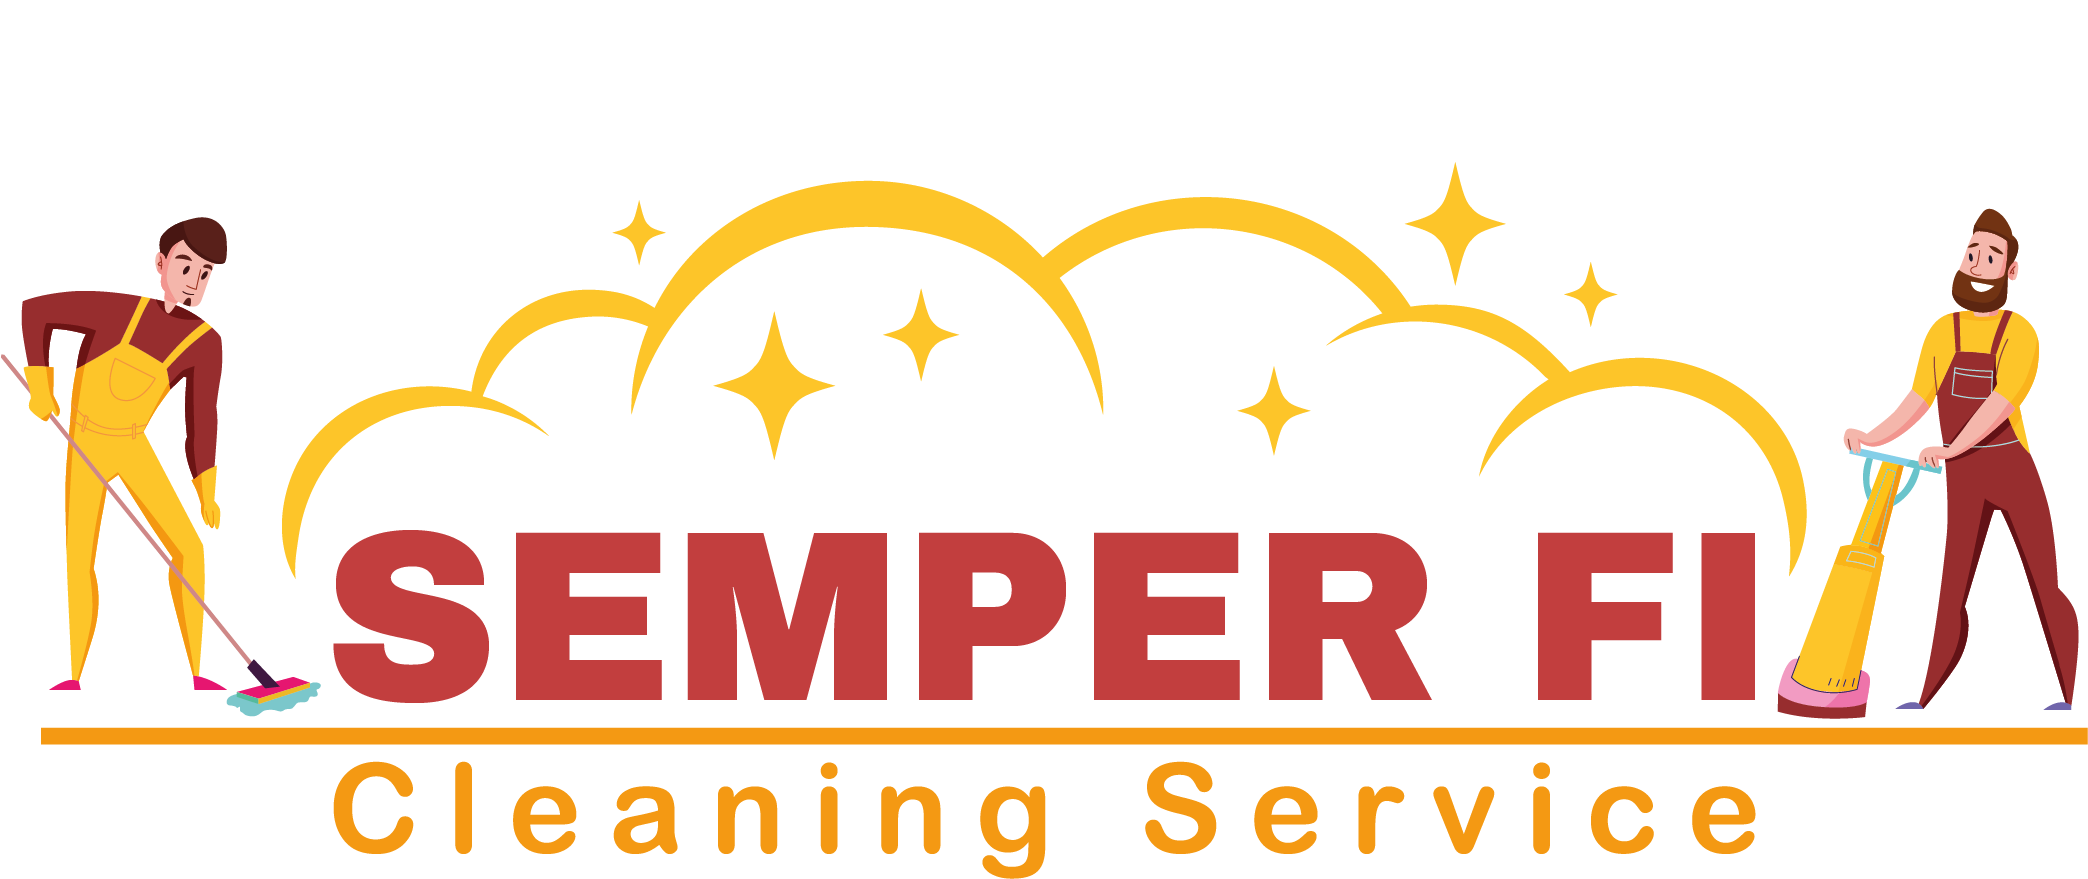 Semper Fi Cleaning Service Logo